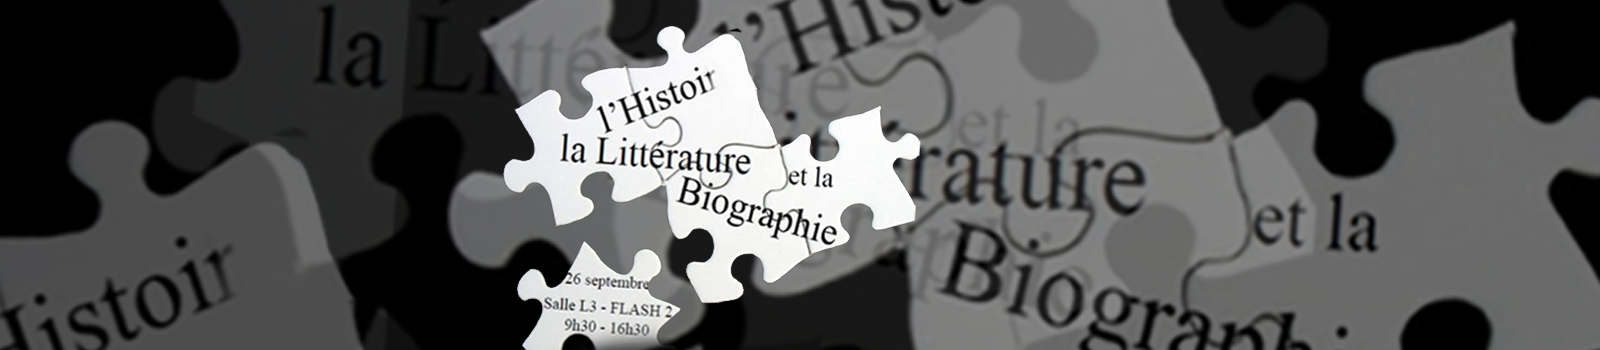 Les frontières entre l'Histoire, la Littérature et la Biographie